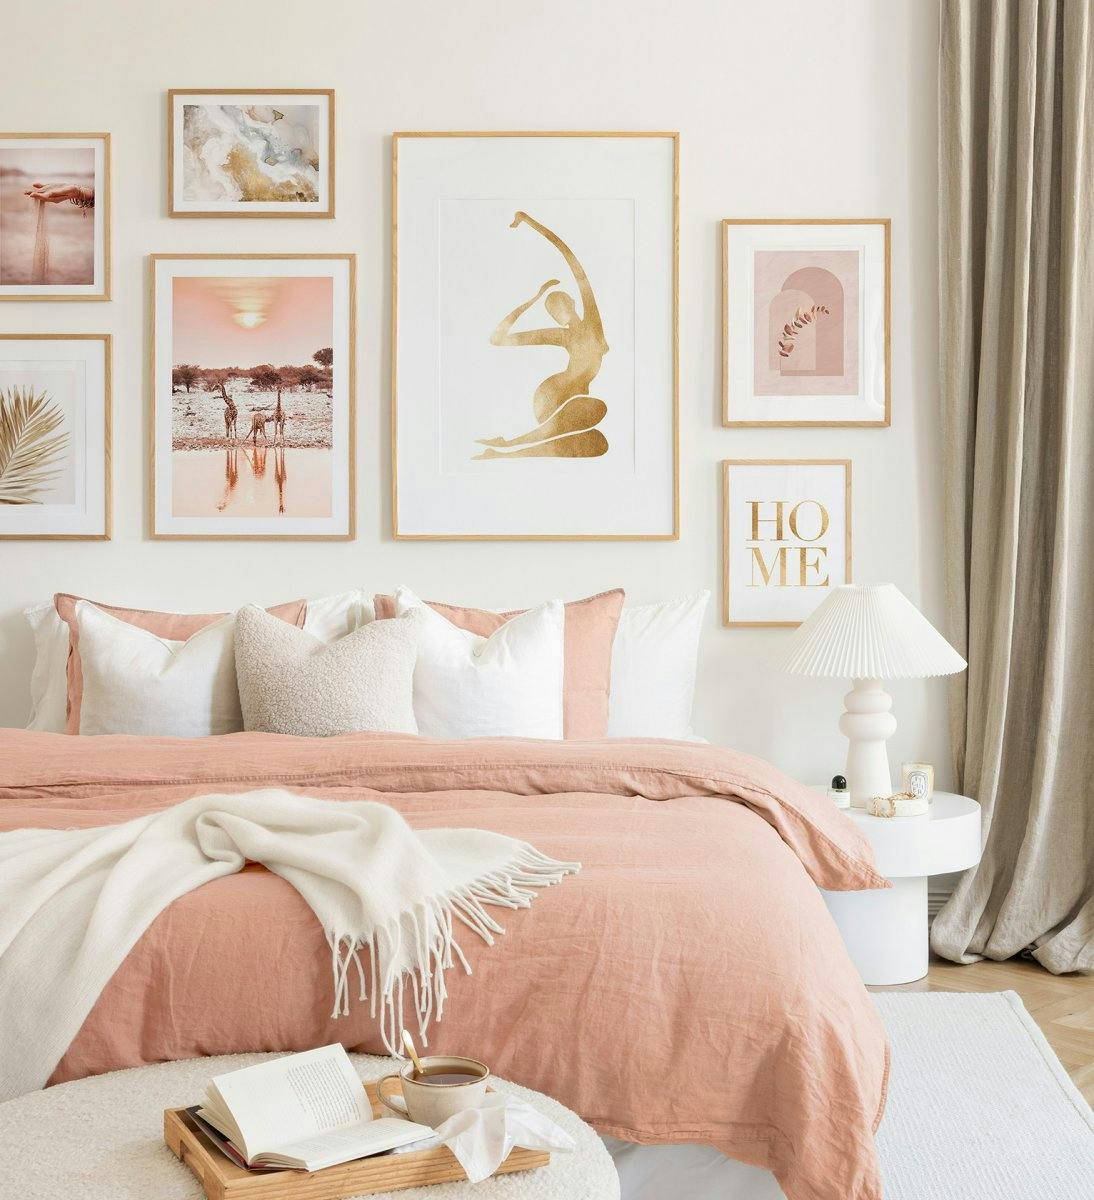 Una galleria a parete con tenui tonalità rosa-beige in cornici di rovere crea un'atmosfera armoniosa nella tua camera da letto.